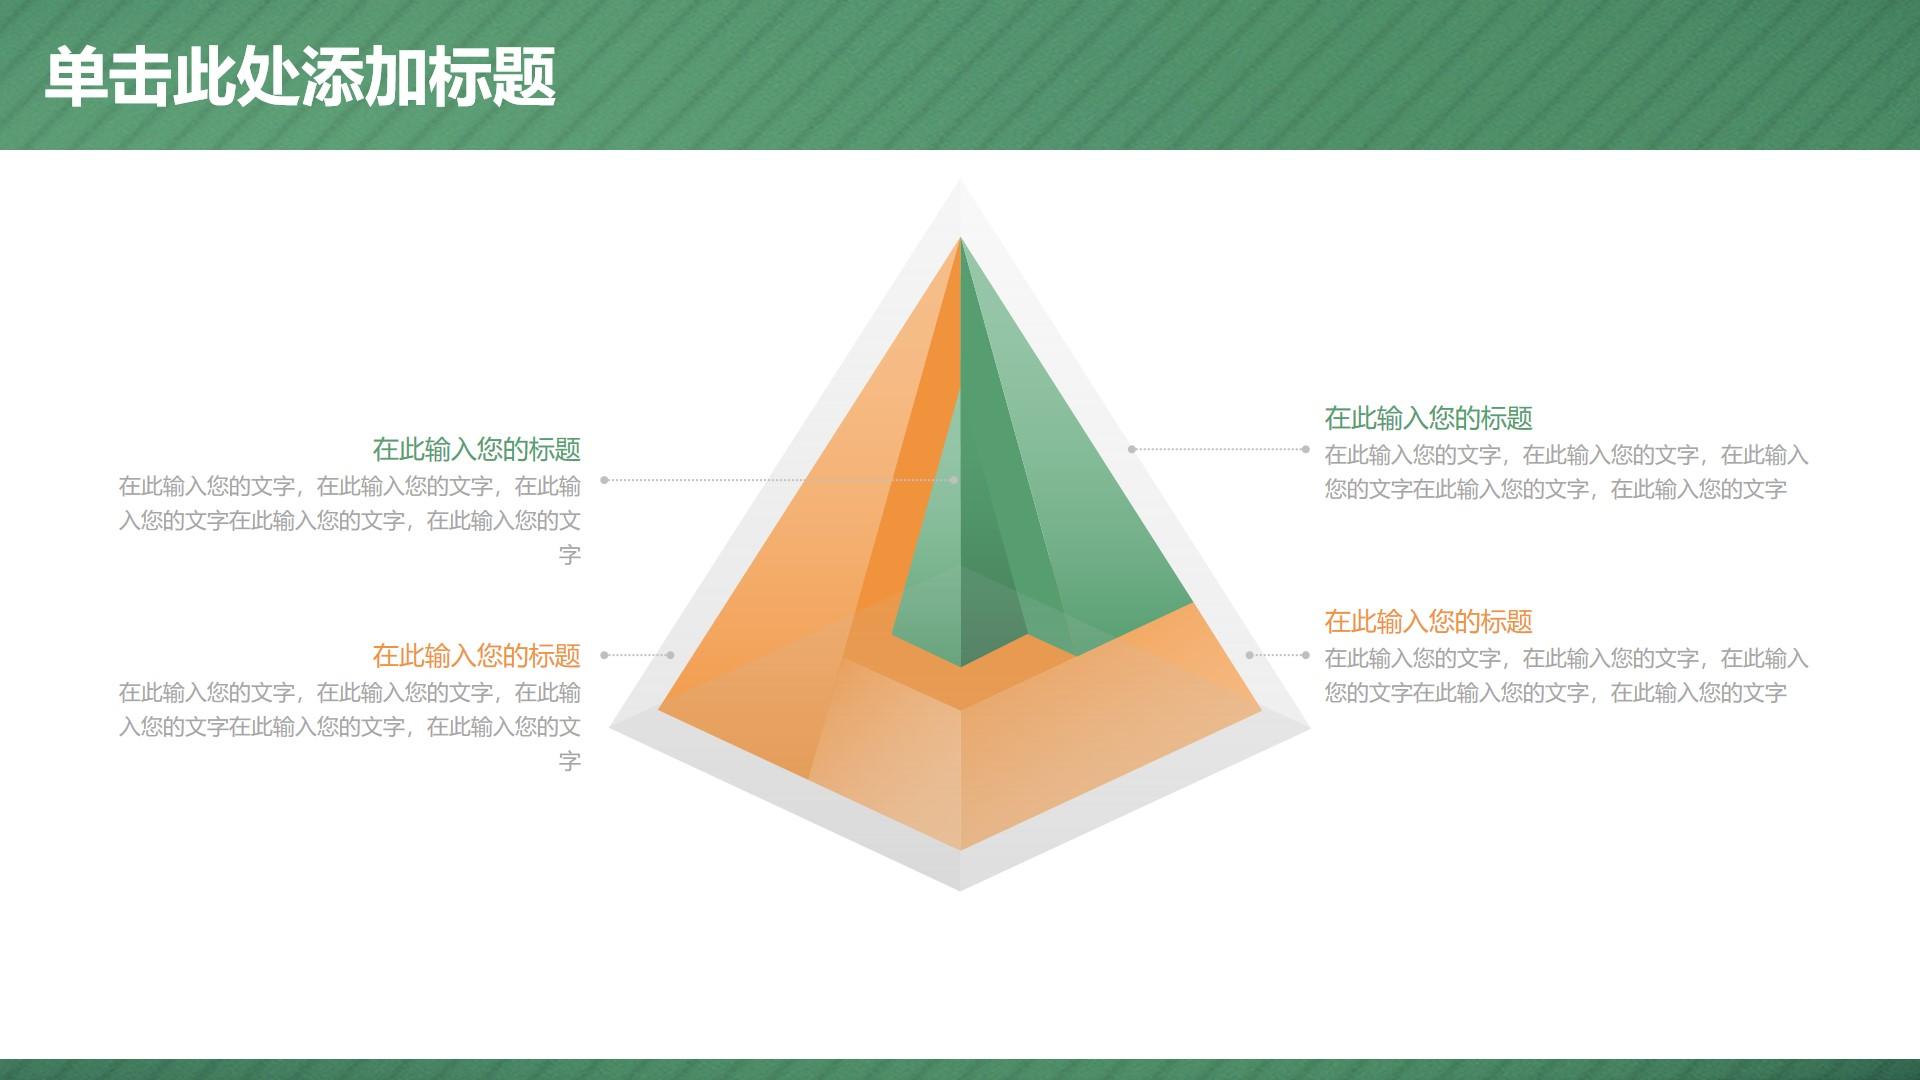 教育教学绿色橙色卡通简洁云素材PPT模板1672661707103